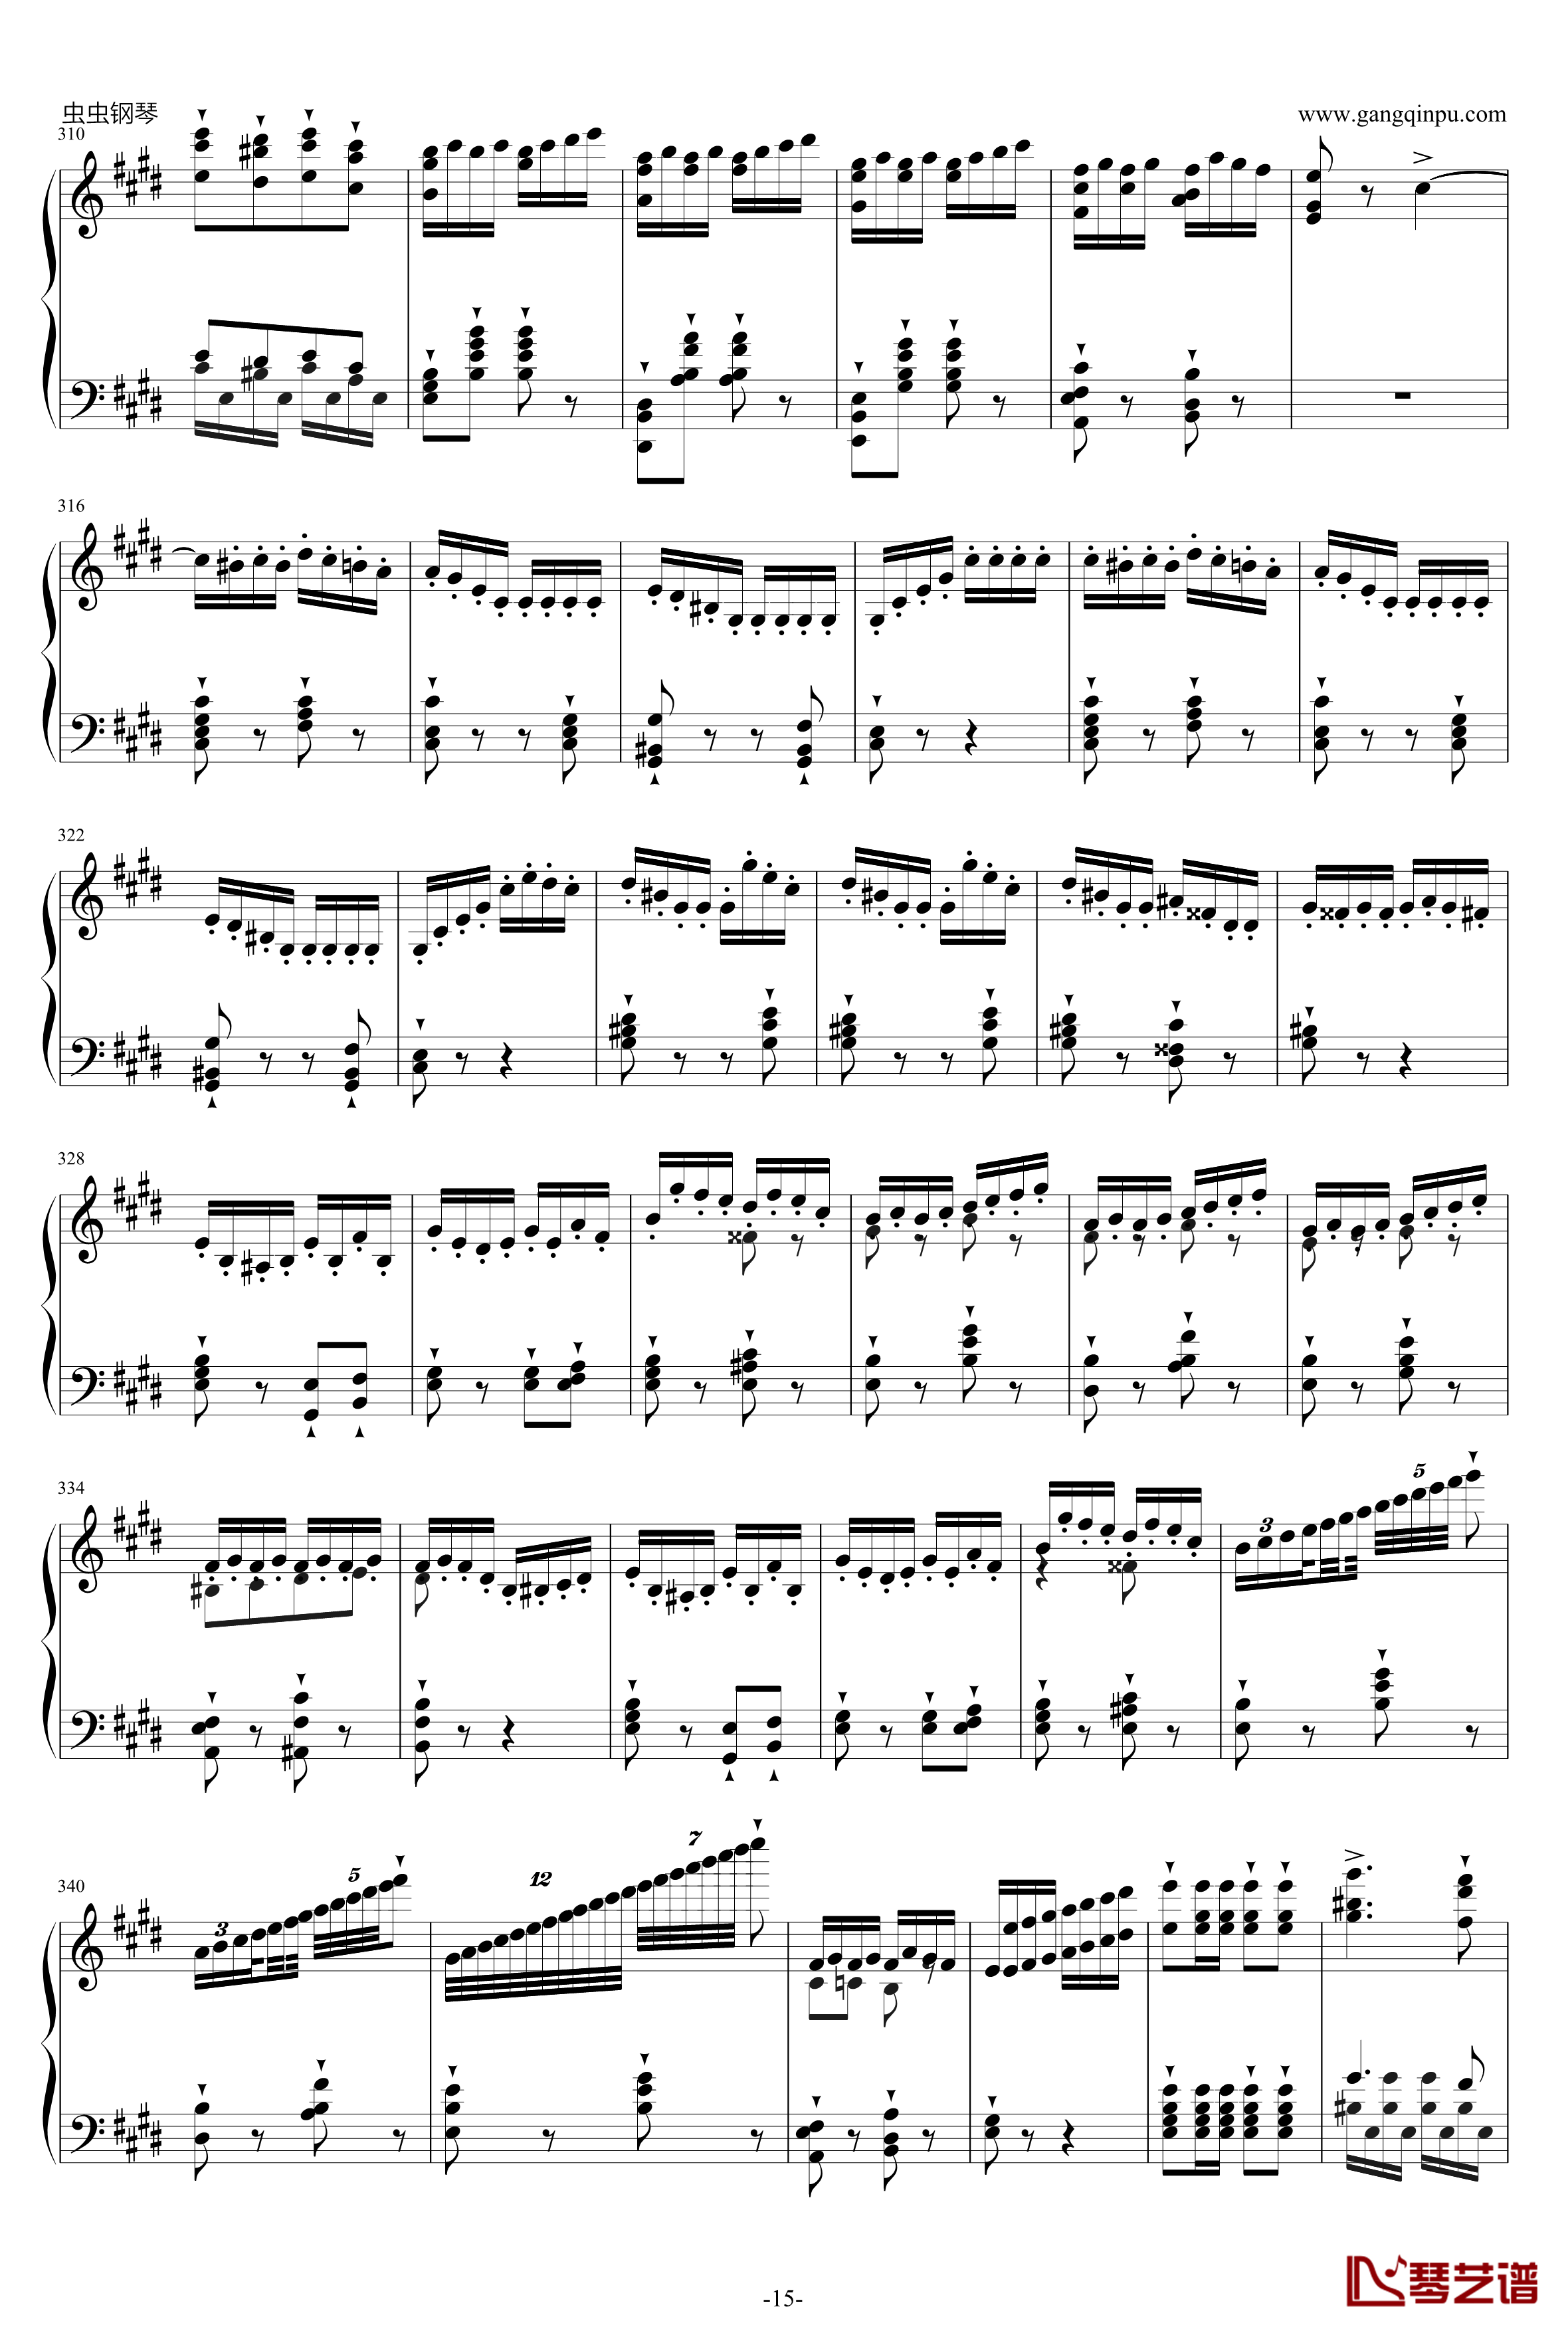 威廉·退尔序曲钢琴谱-李斯特S.55215